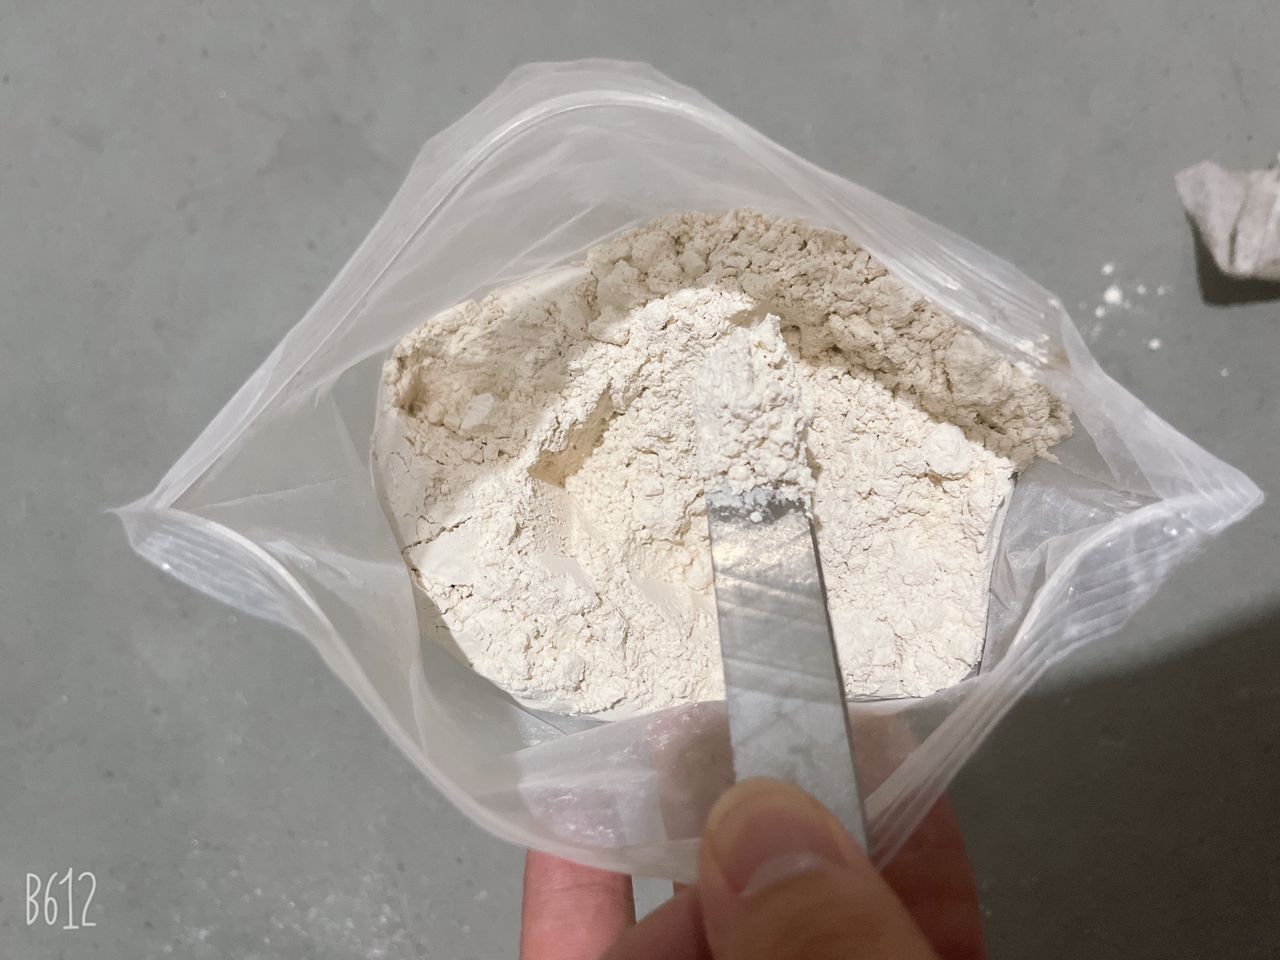 Buy-Clonazepam-Powder